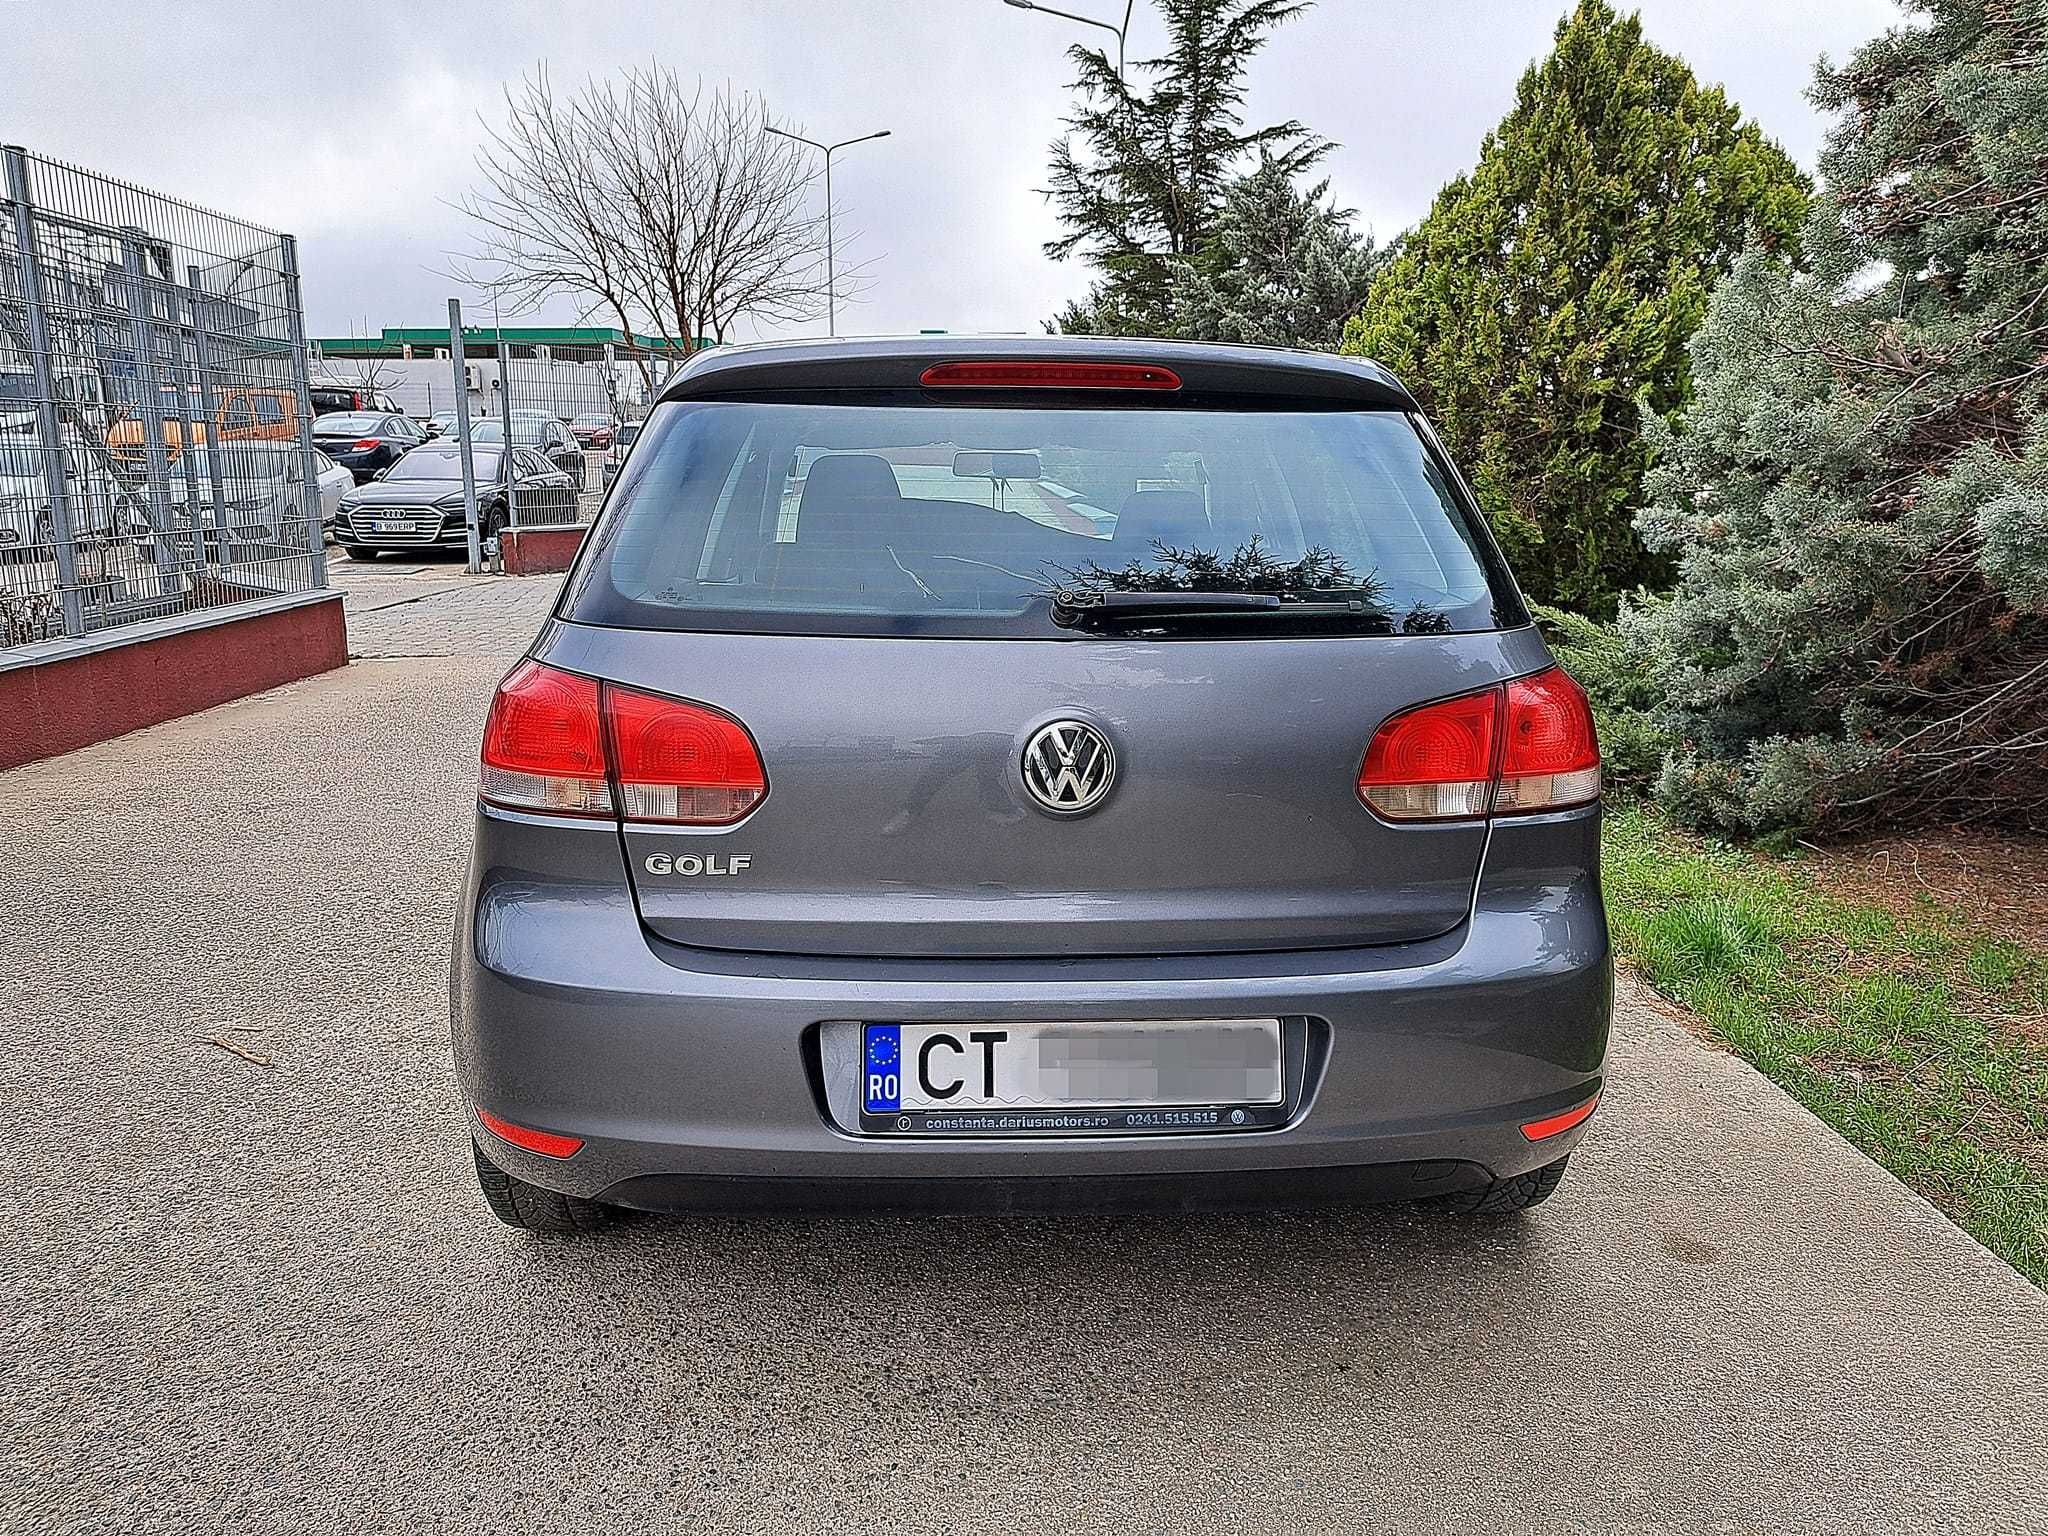 Volkswagen Golf 6 1.4mpi | Conditie Excelenta